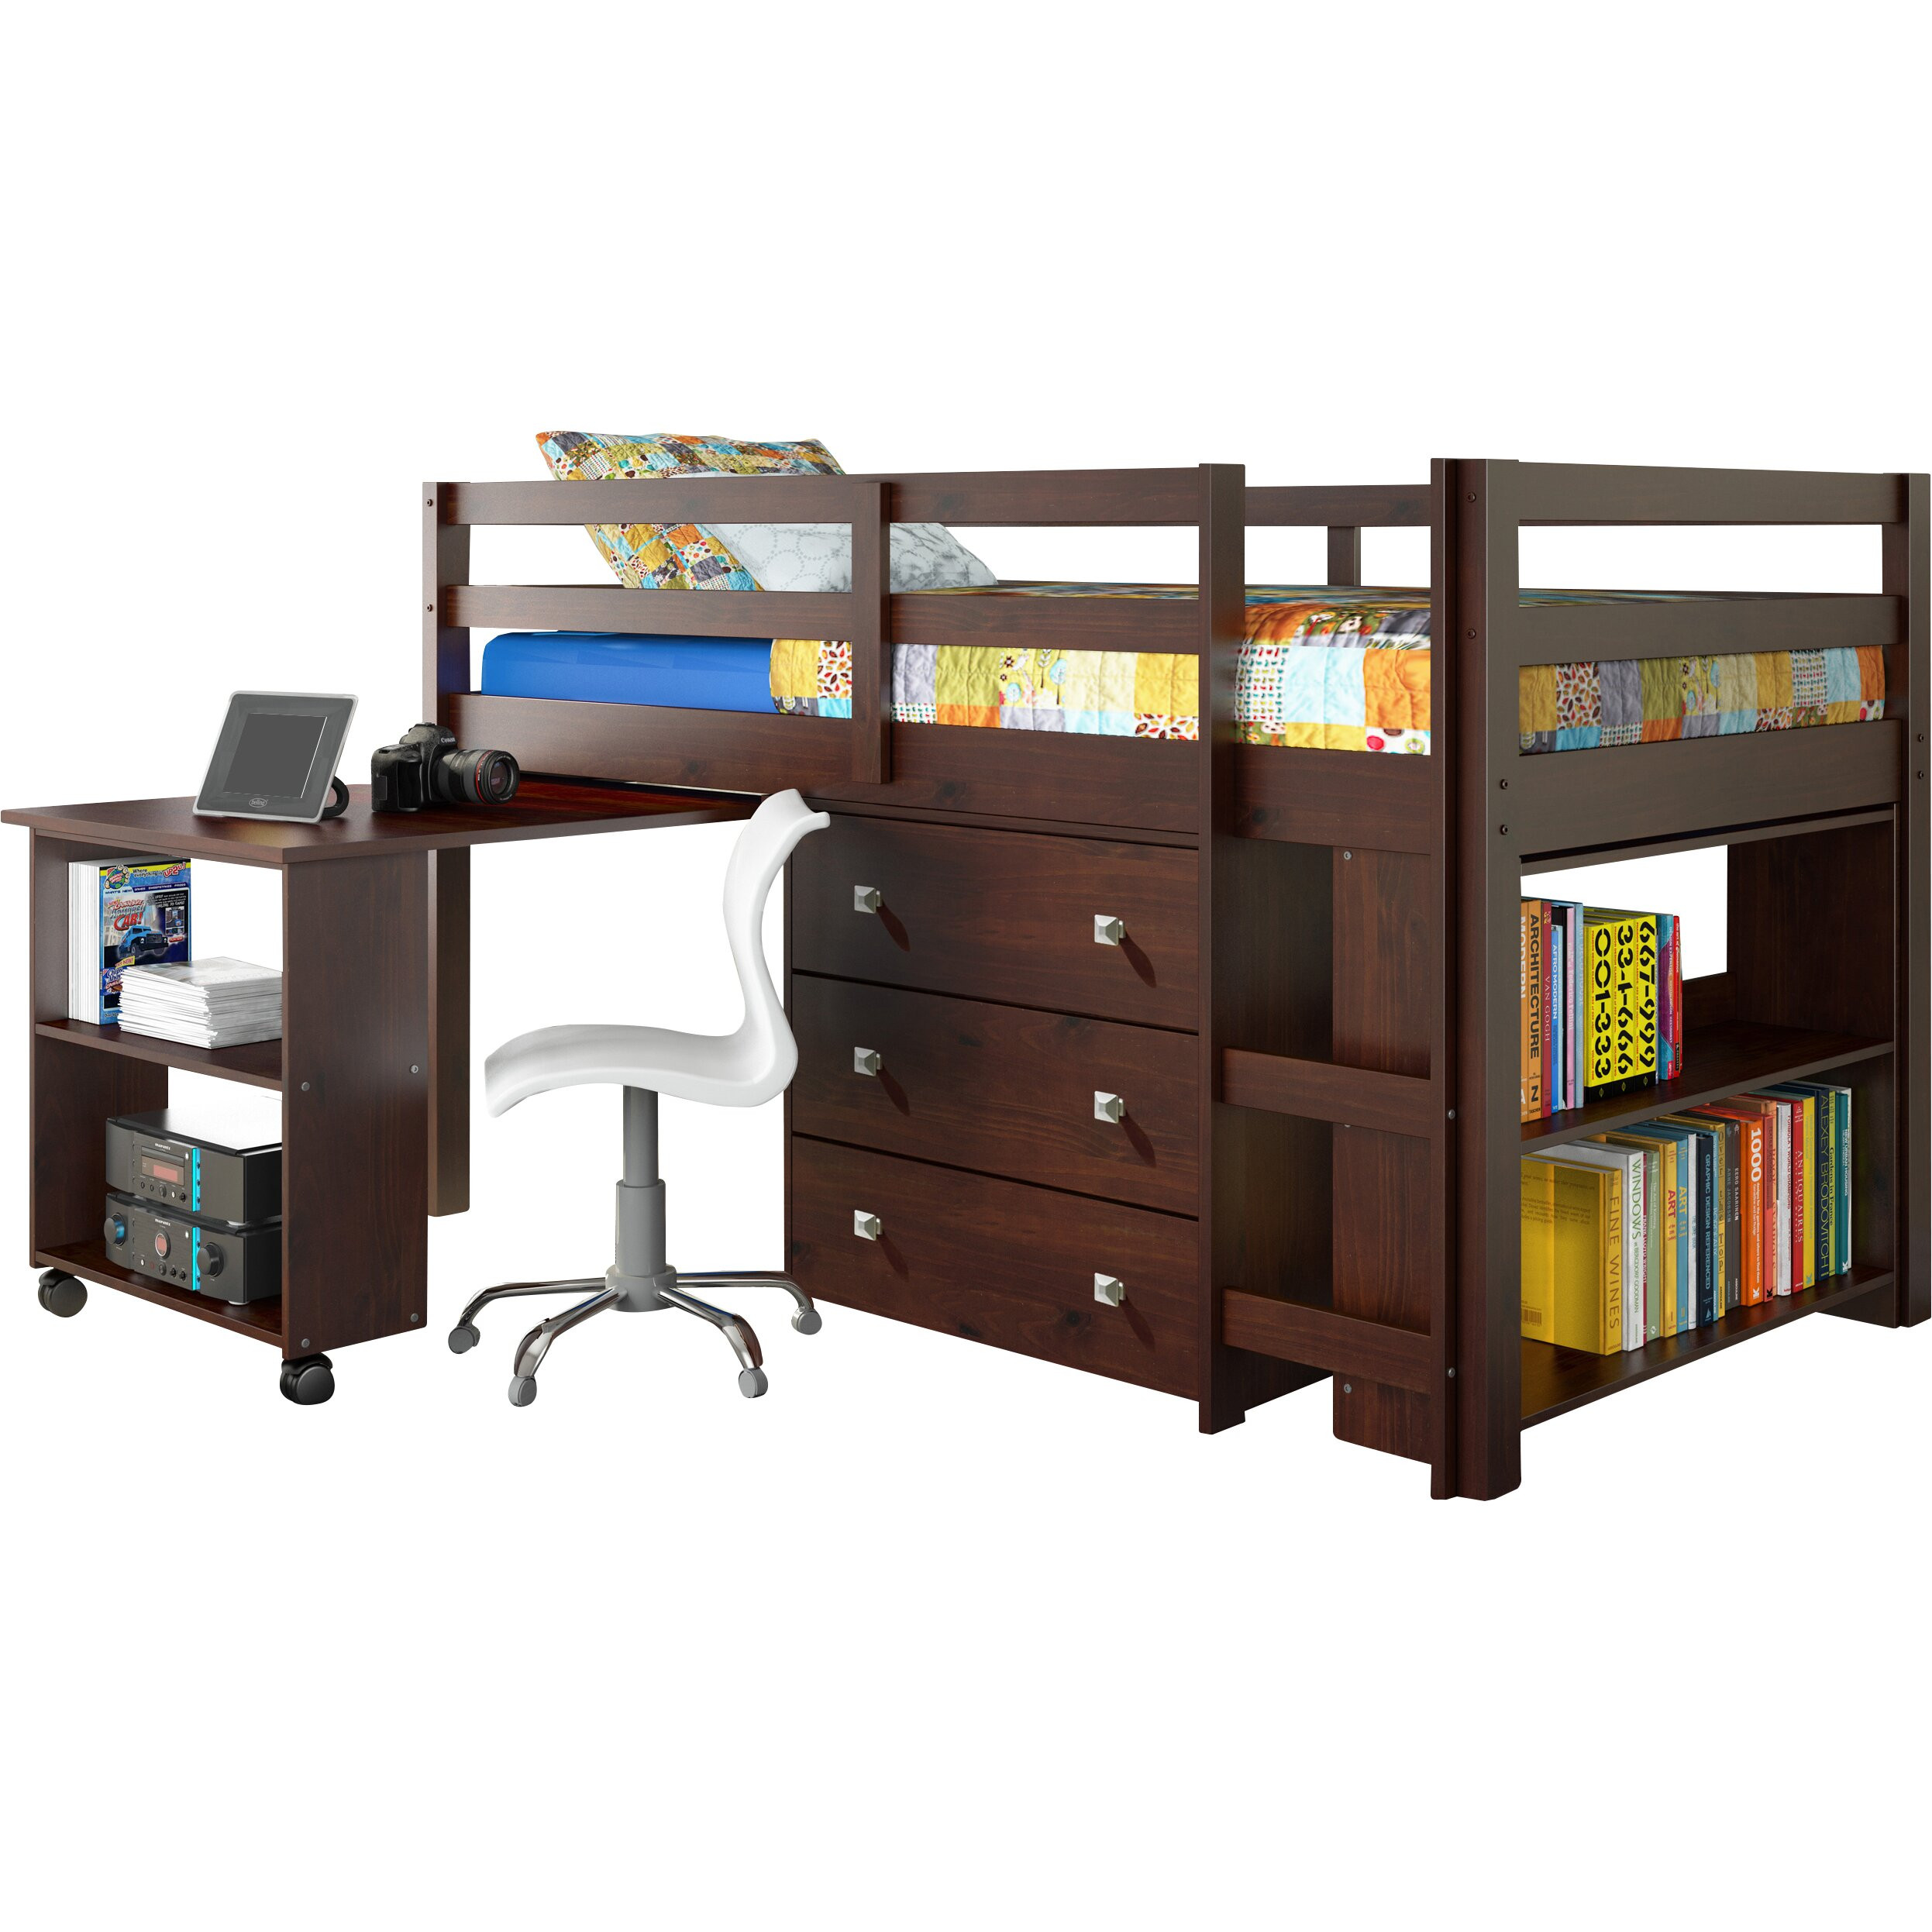 Childrens Loft Bed With Storage
 Donco Kids Twin Low Loft Bed with Storage & Reviews